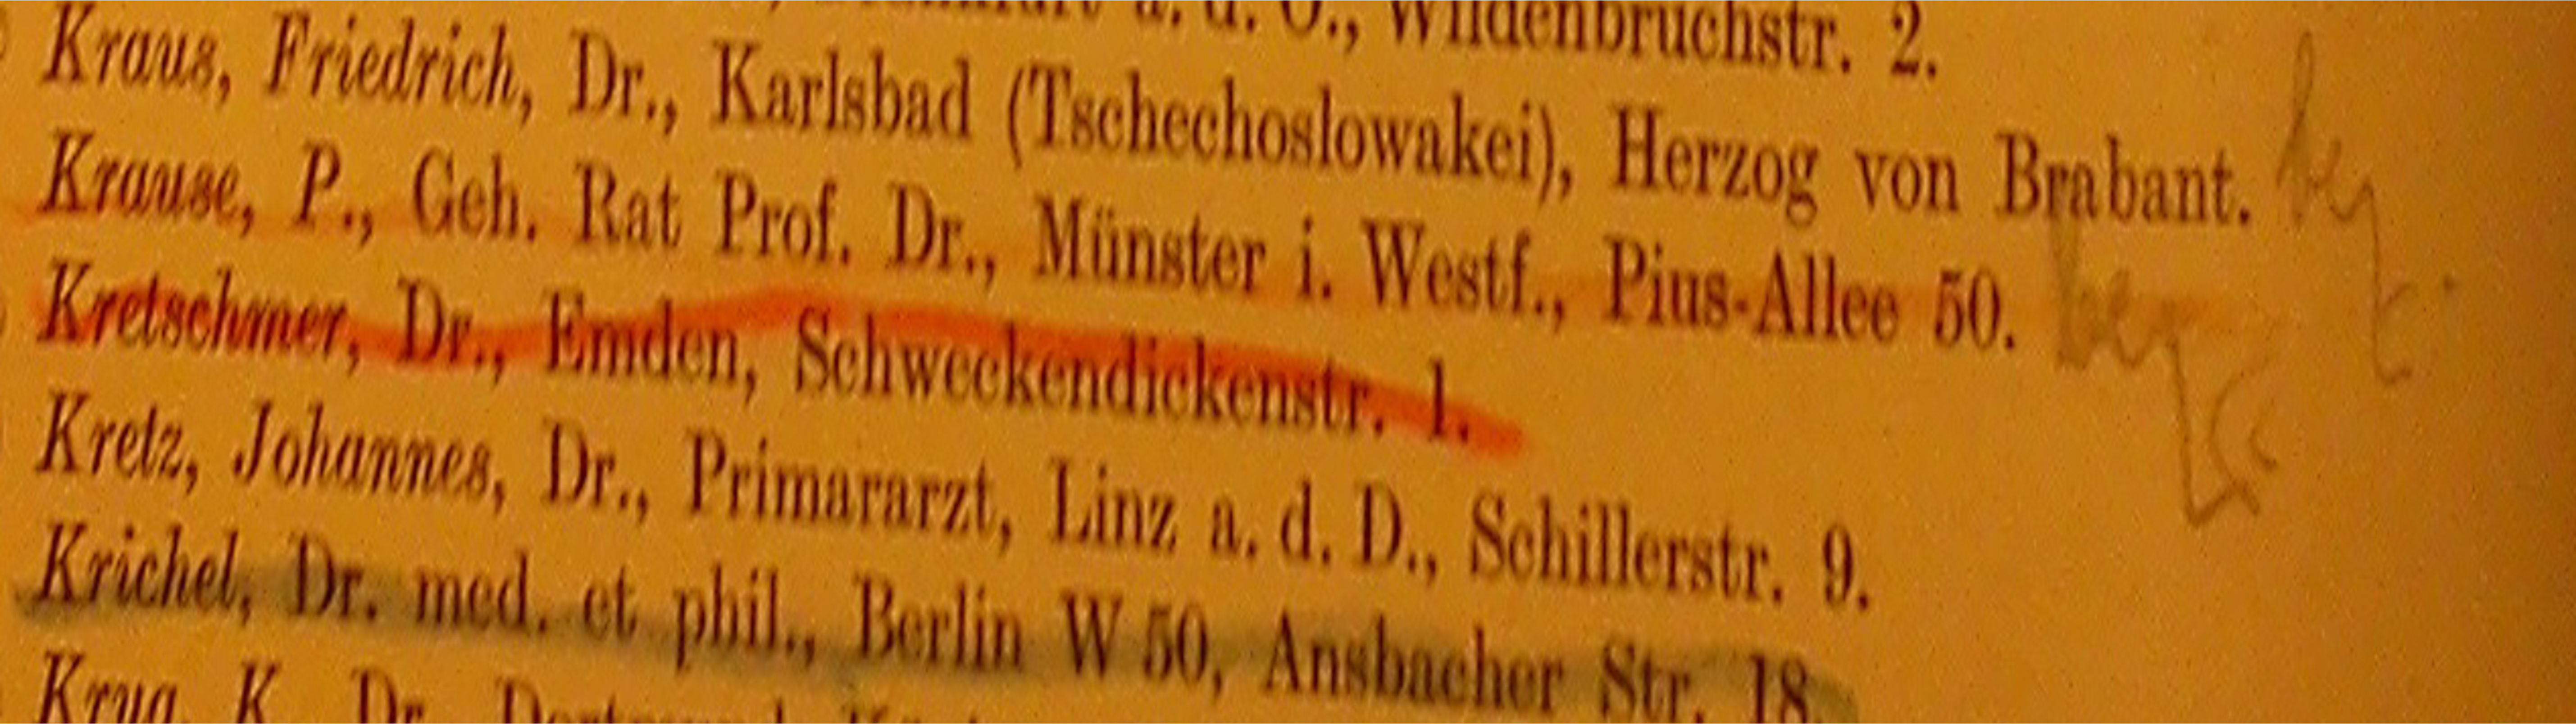 Streichung Kretschmers aus der DGVS Mitgliederliste 1932/33, Archiv DGVS